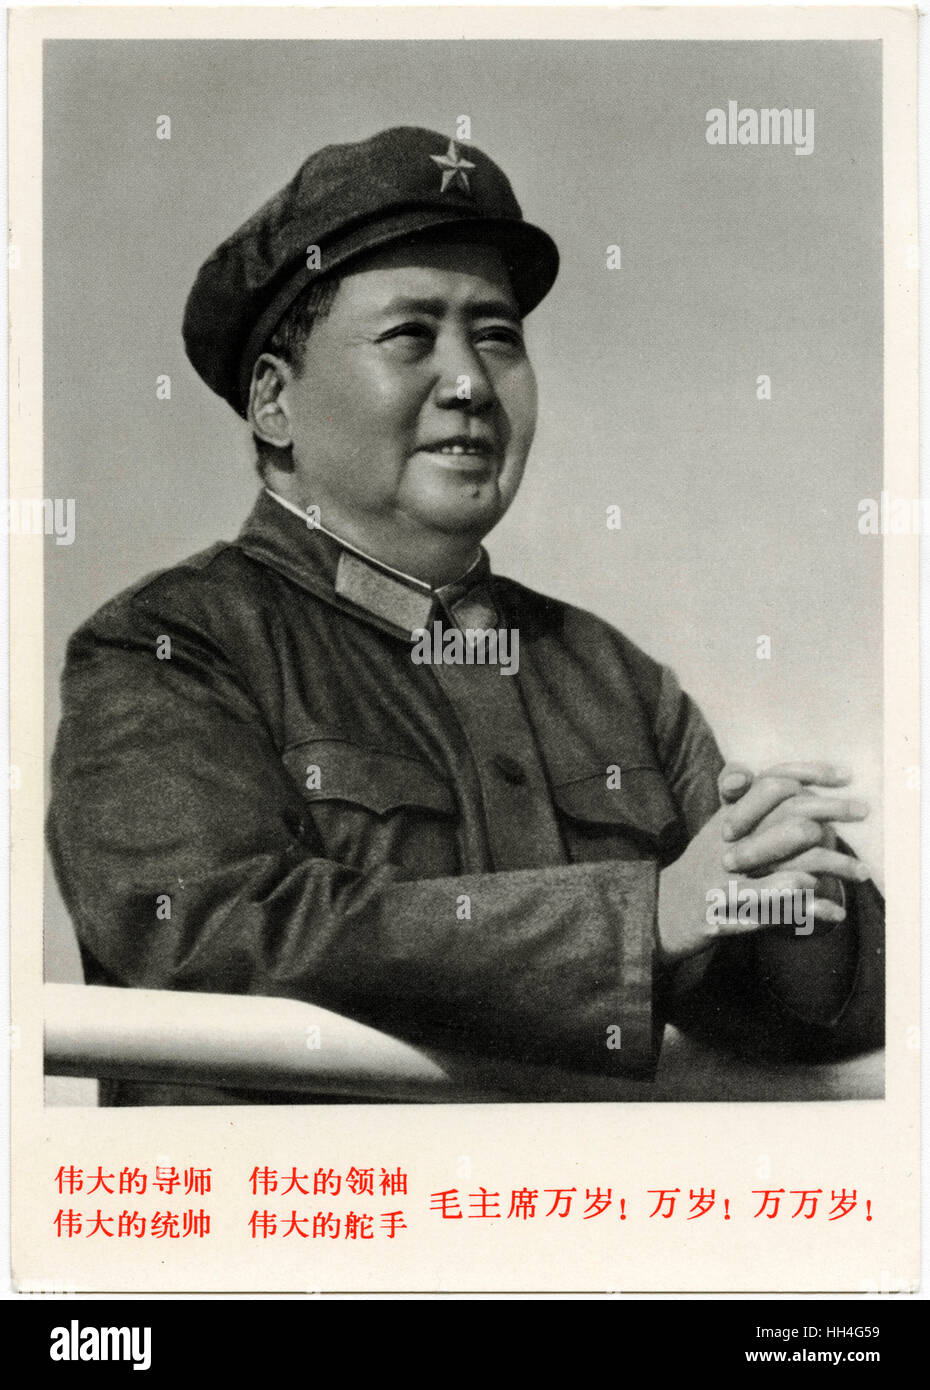 Mao Zedong (Tse-tung) oft als Vorsitzenden Mao (1893-1976) - chinesische kommunistische revolutionäre und der Gründungsvater der Volksrepublik China, die er als Vorsitzender der kommunistischen Partei Chinas regiert. Stockfoto